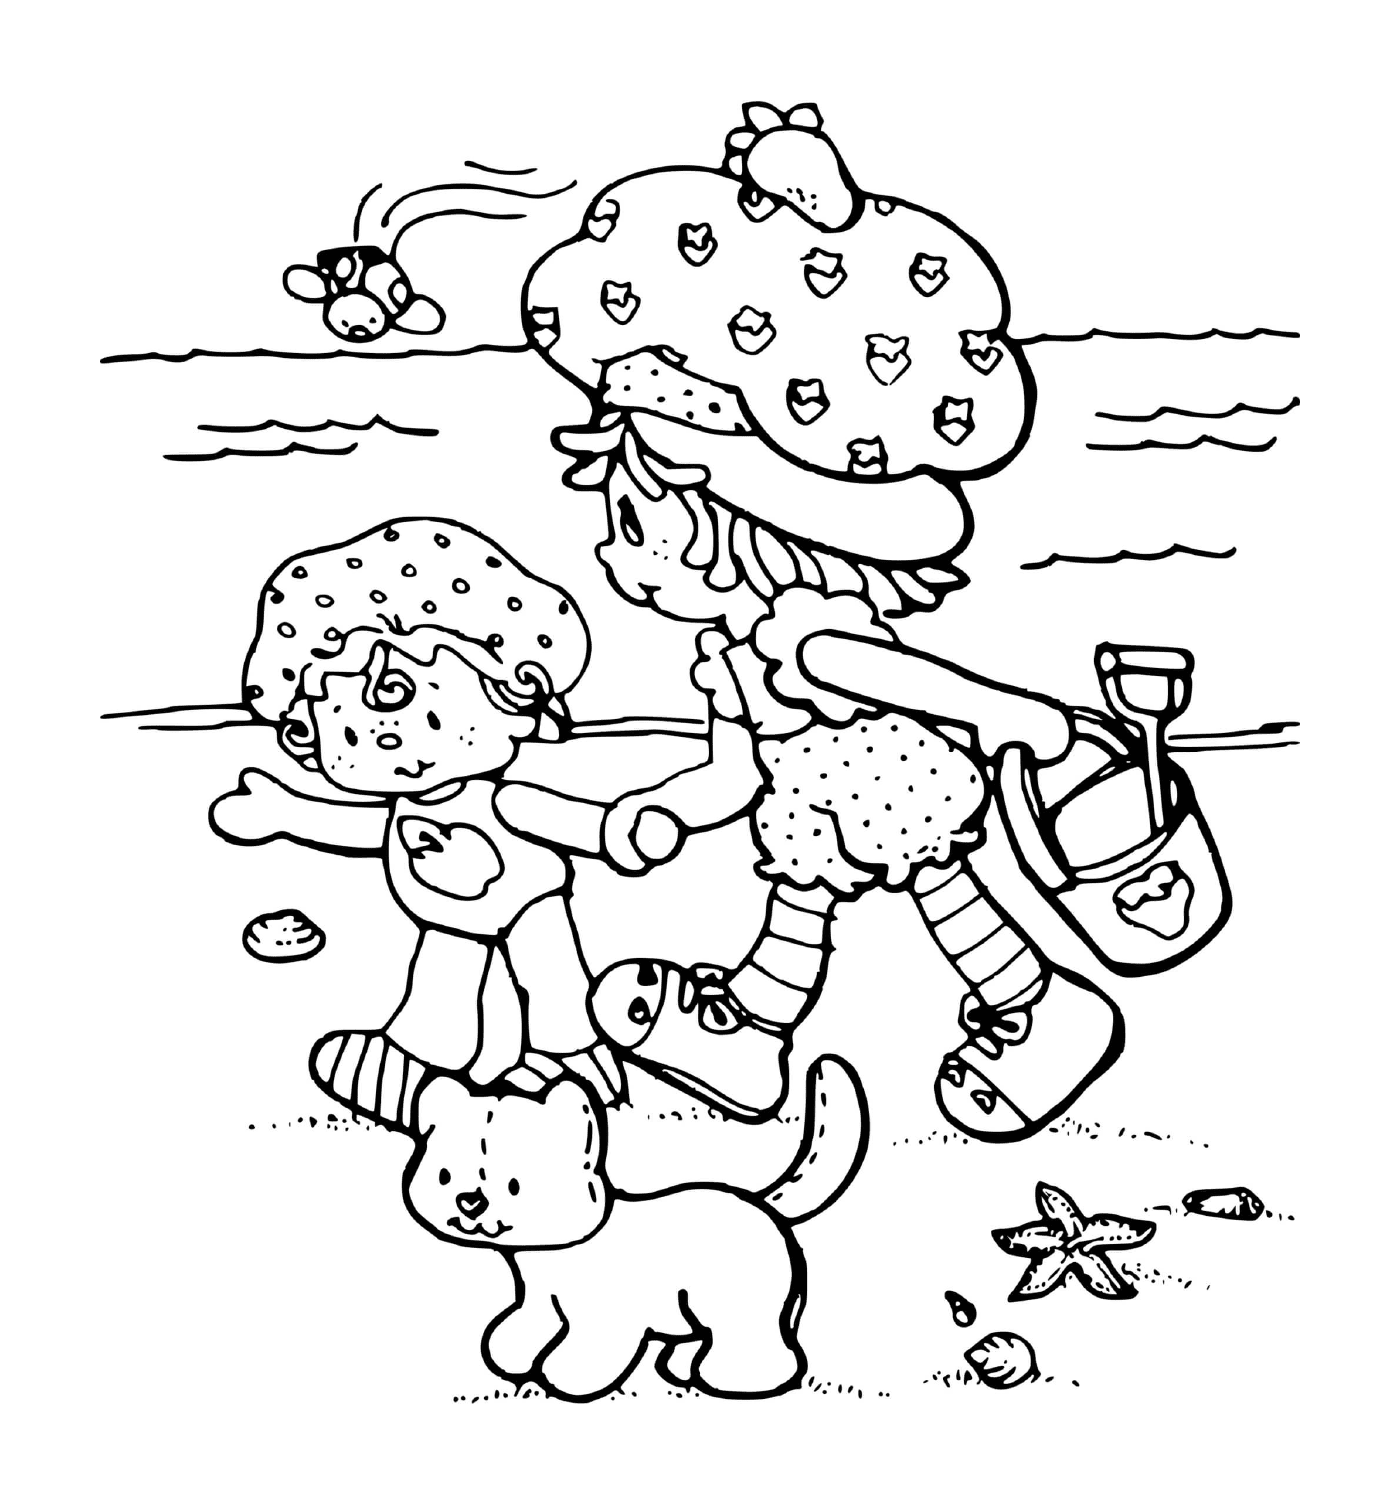 Charlotte aux fraises a la plage